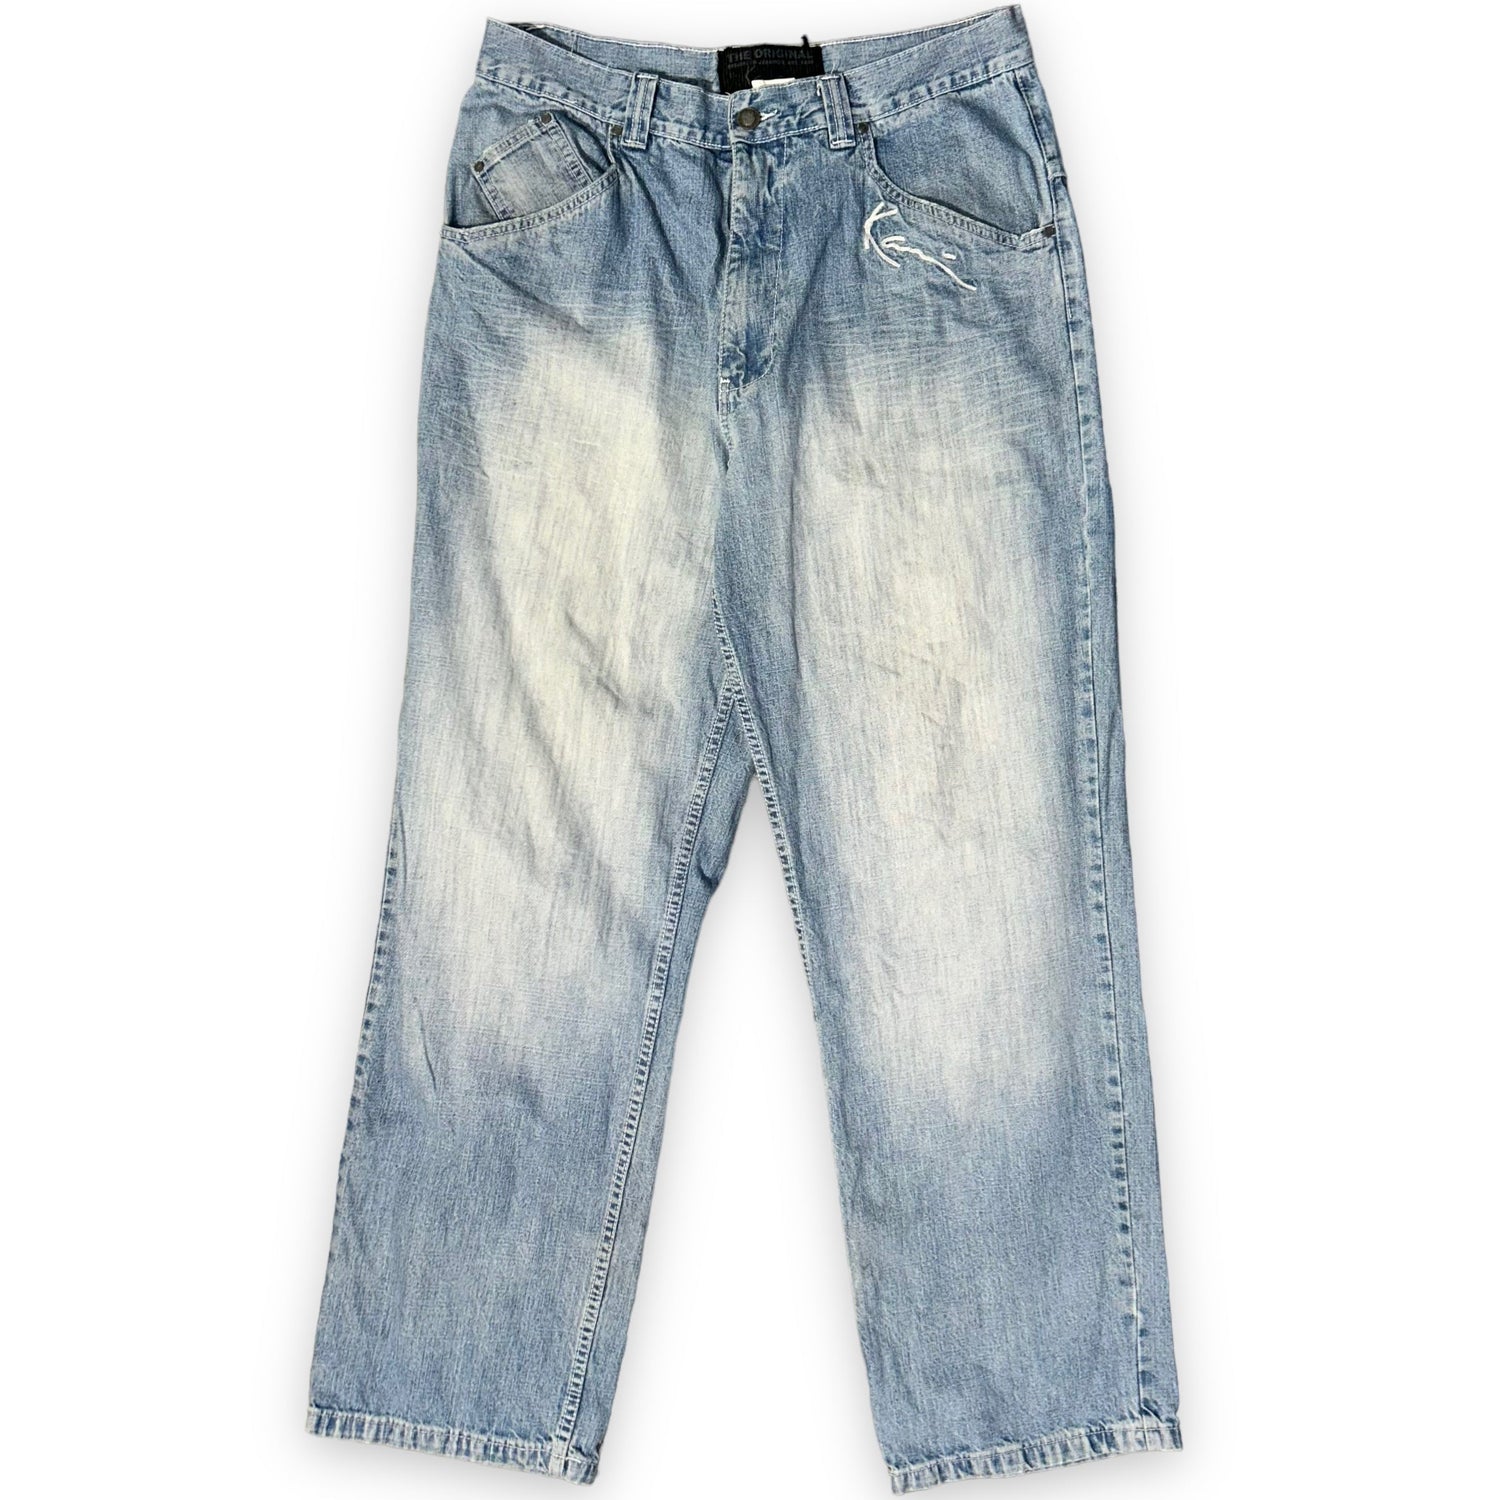 Baggy jeans Karl Kani Vintage (34 USA L) - oldstyleclothing